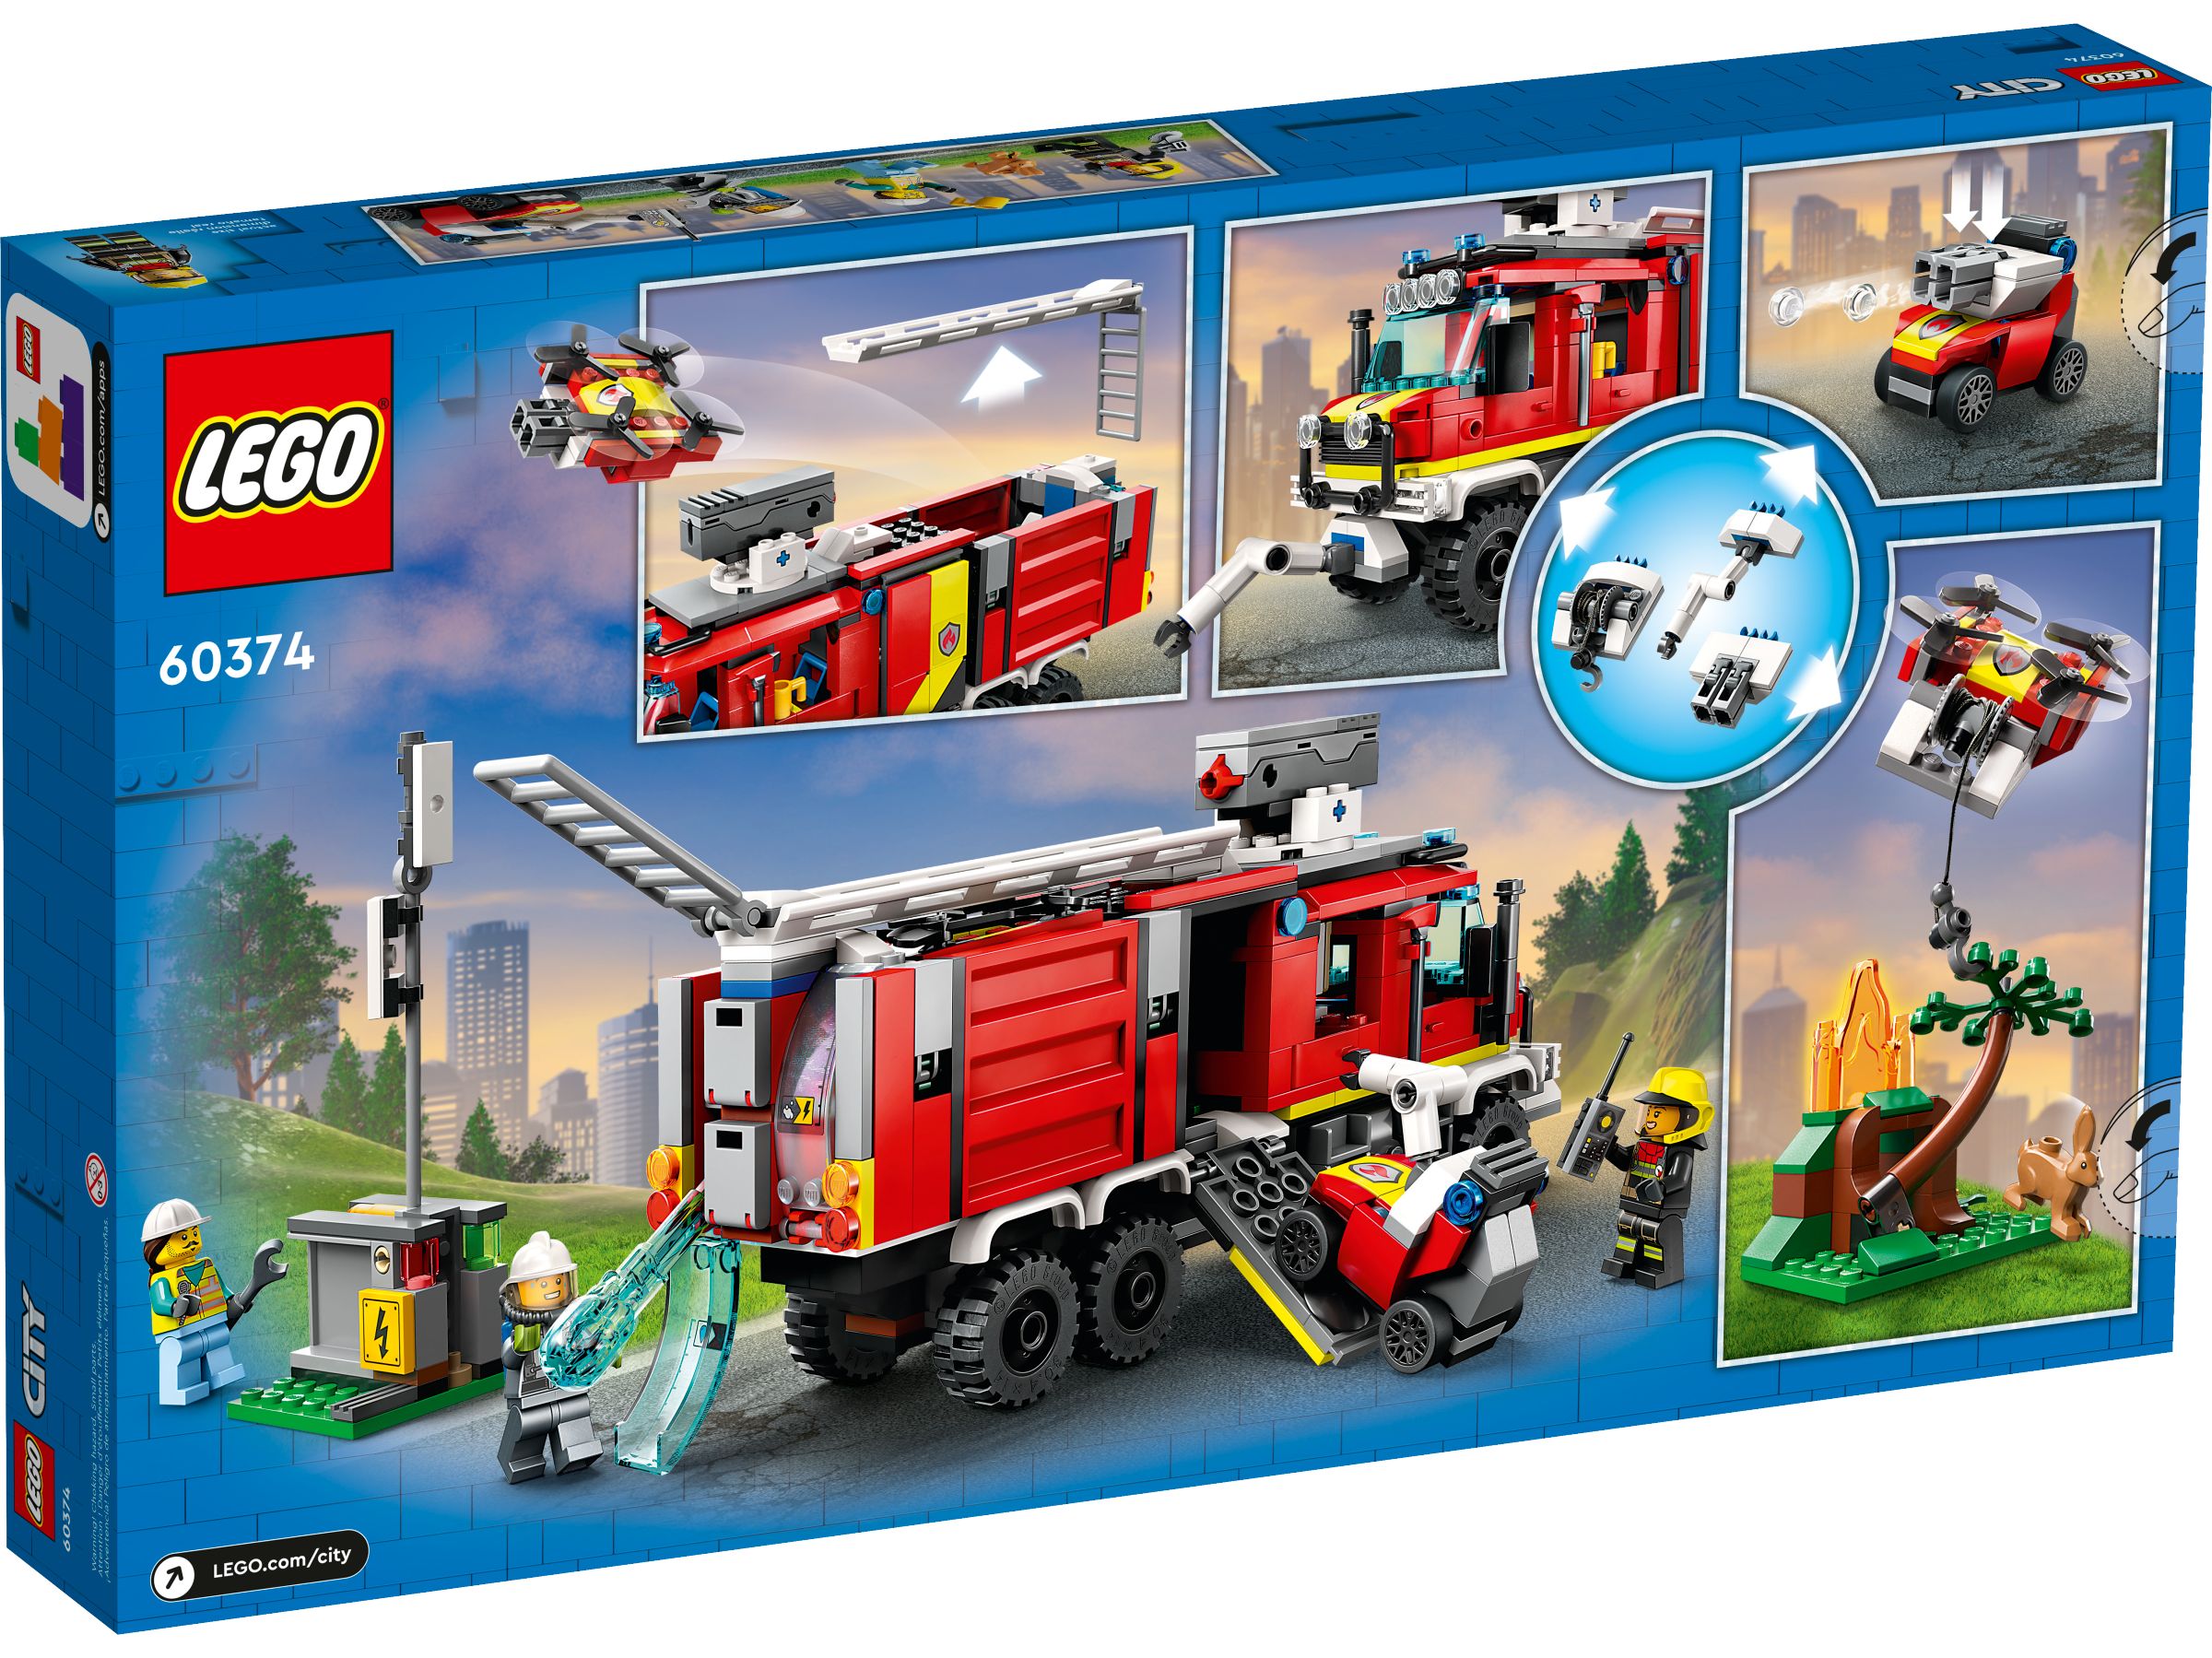 LEGO City 60374 Einsatzleitwagen der Feuerwehr LEGO_60374_alt12.jpg